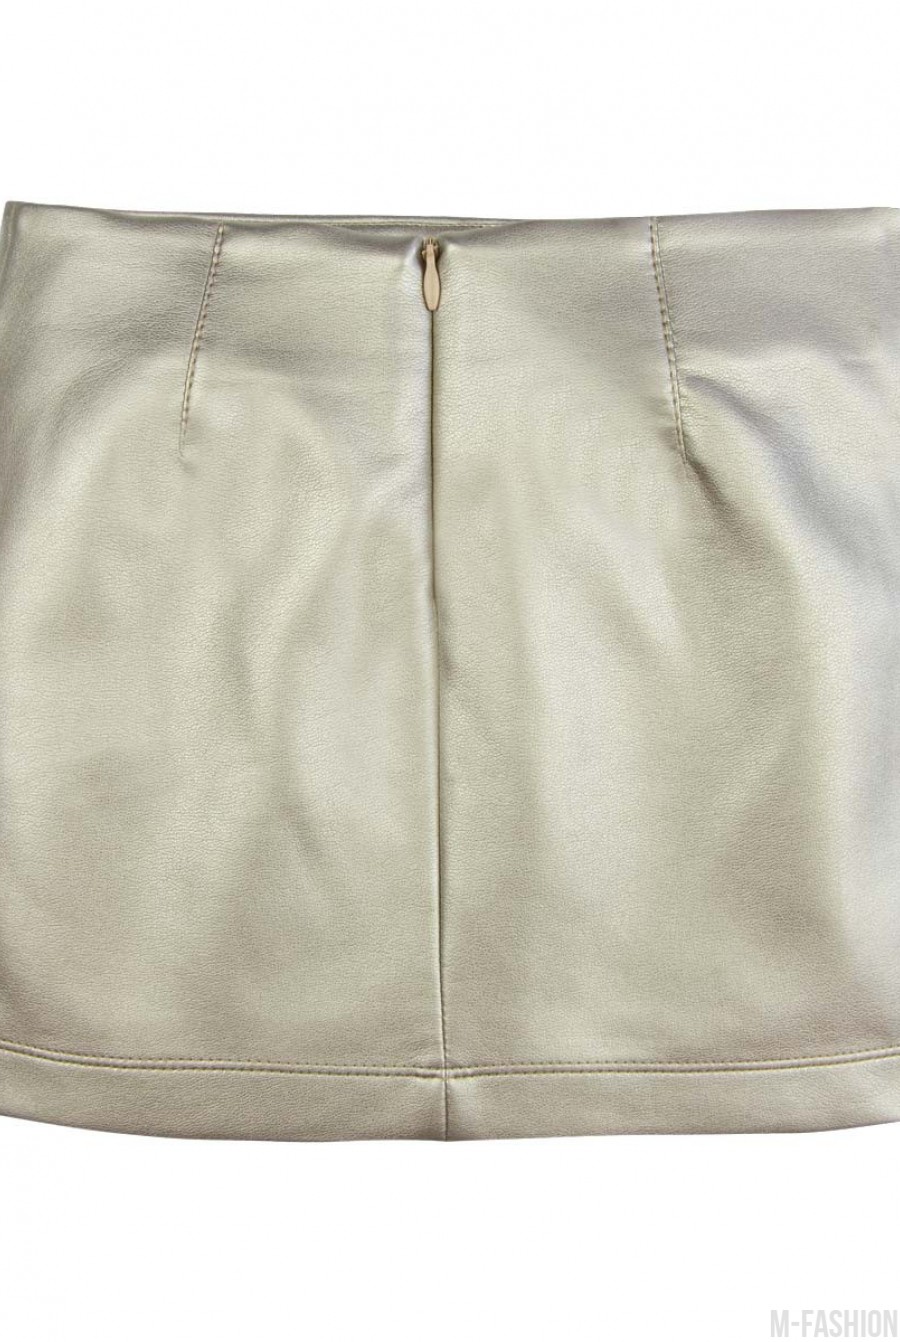 Прямая юбка из эко-кожи цвета "золотистый металлик"- Фото 4